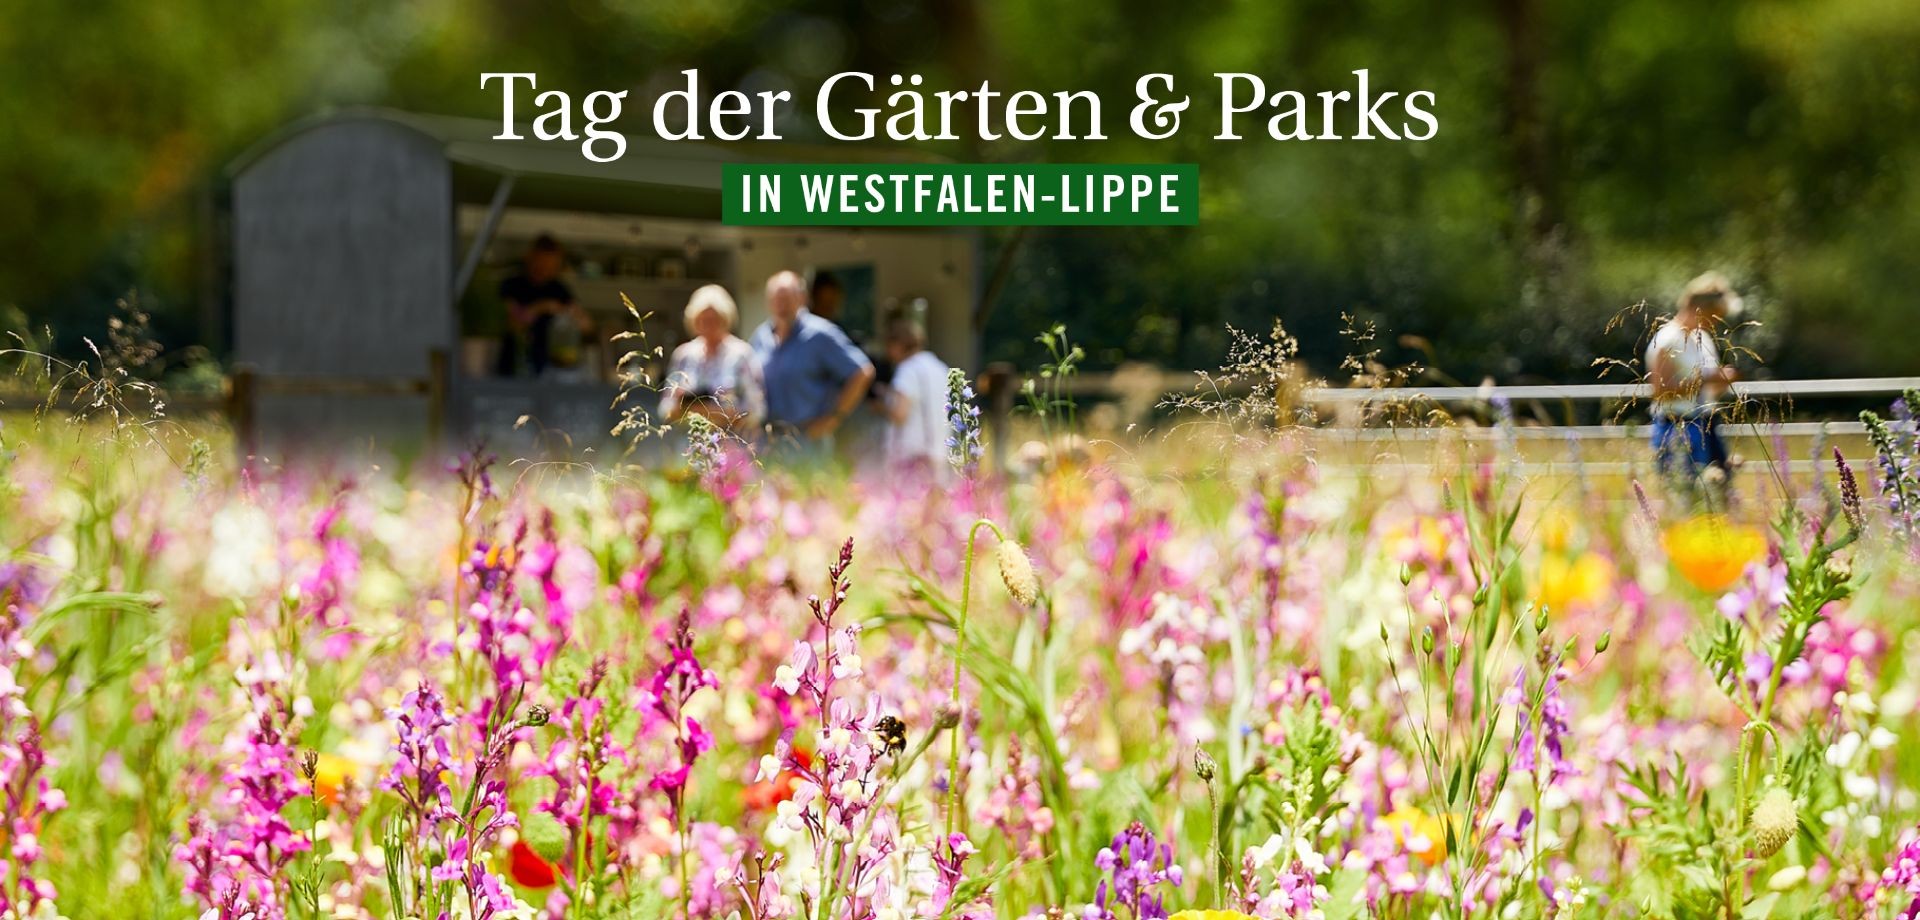 "Tag der Gärten und Parks in Westfale-Lippe" Garten mit Besucher:innen